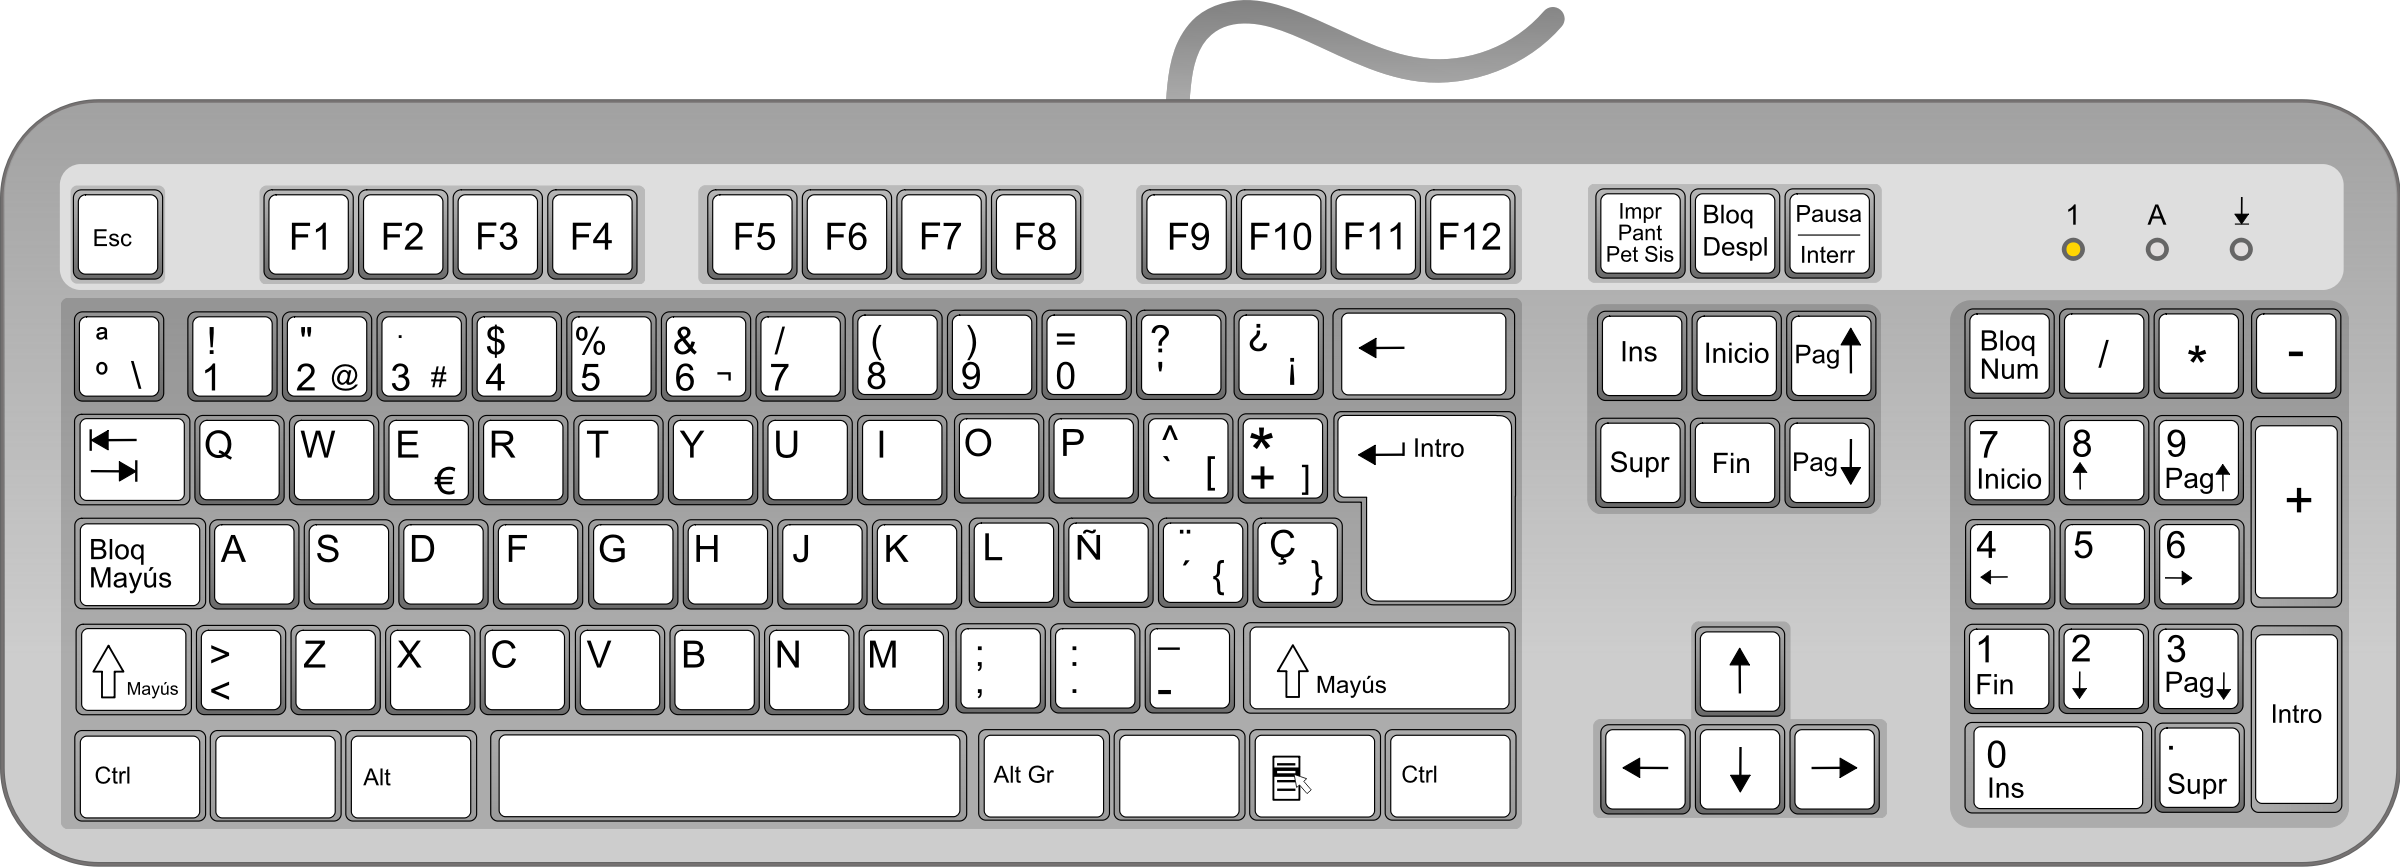 mac keyboard clipart - photo #36